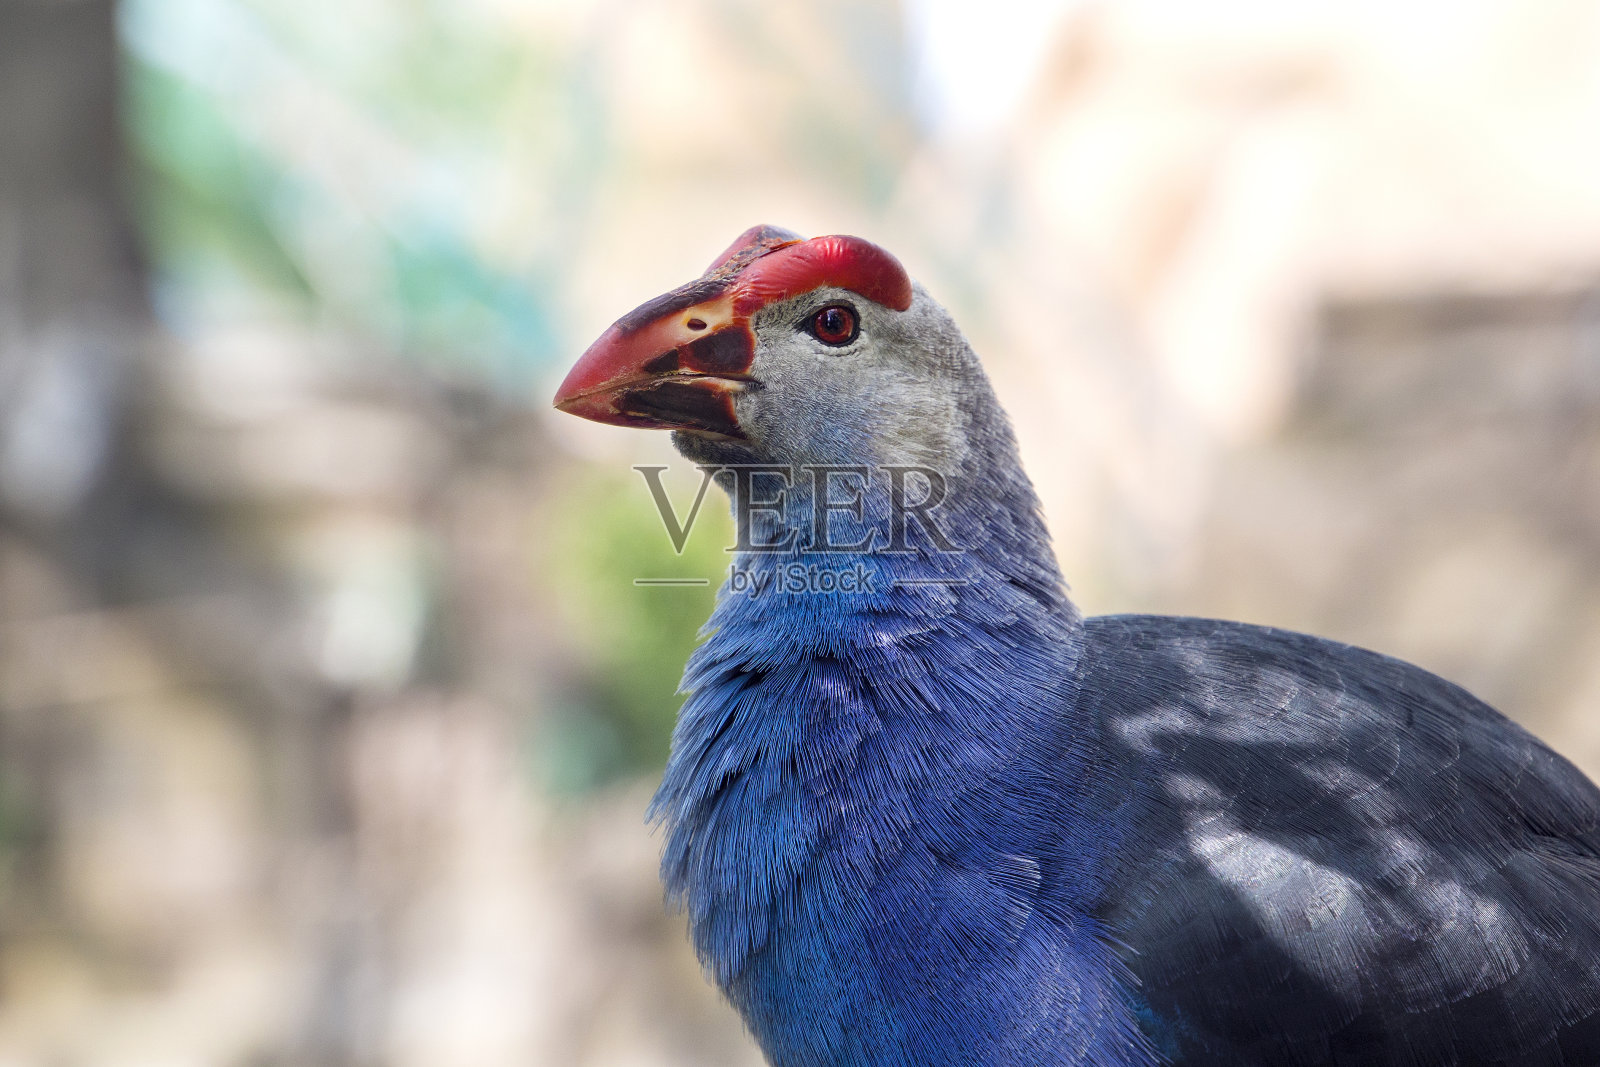 蓝色羽毛的紫色沼泽鸟(背景是池塘)照片摄影图片